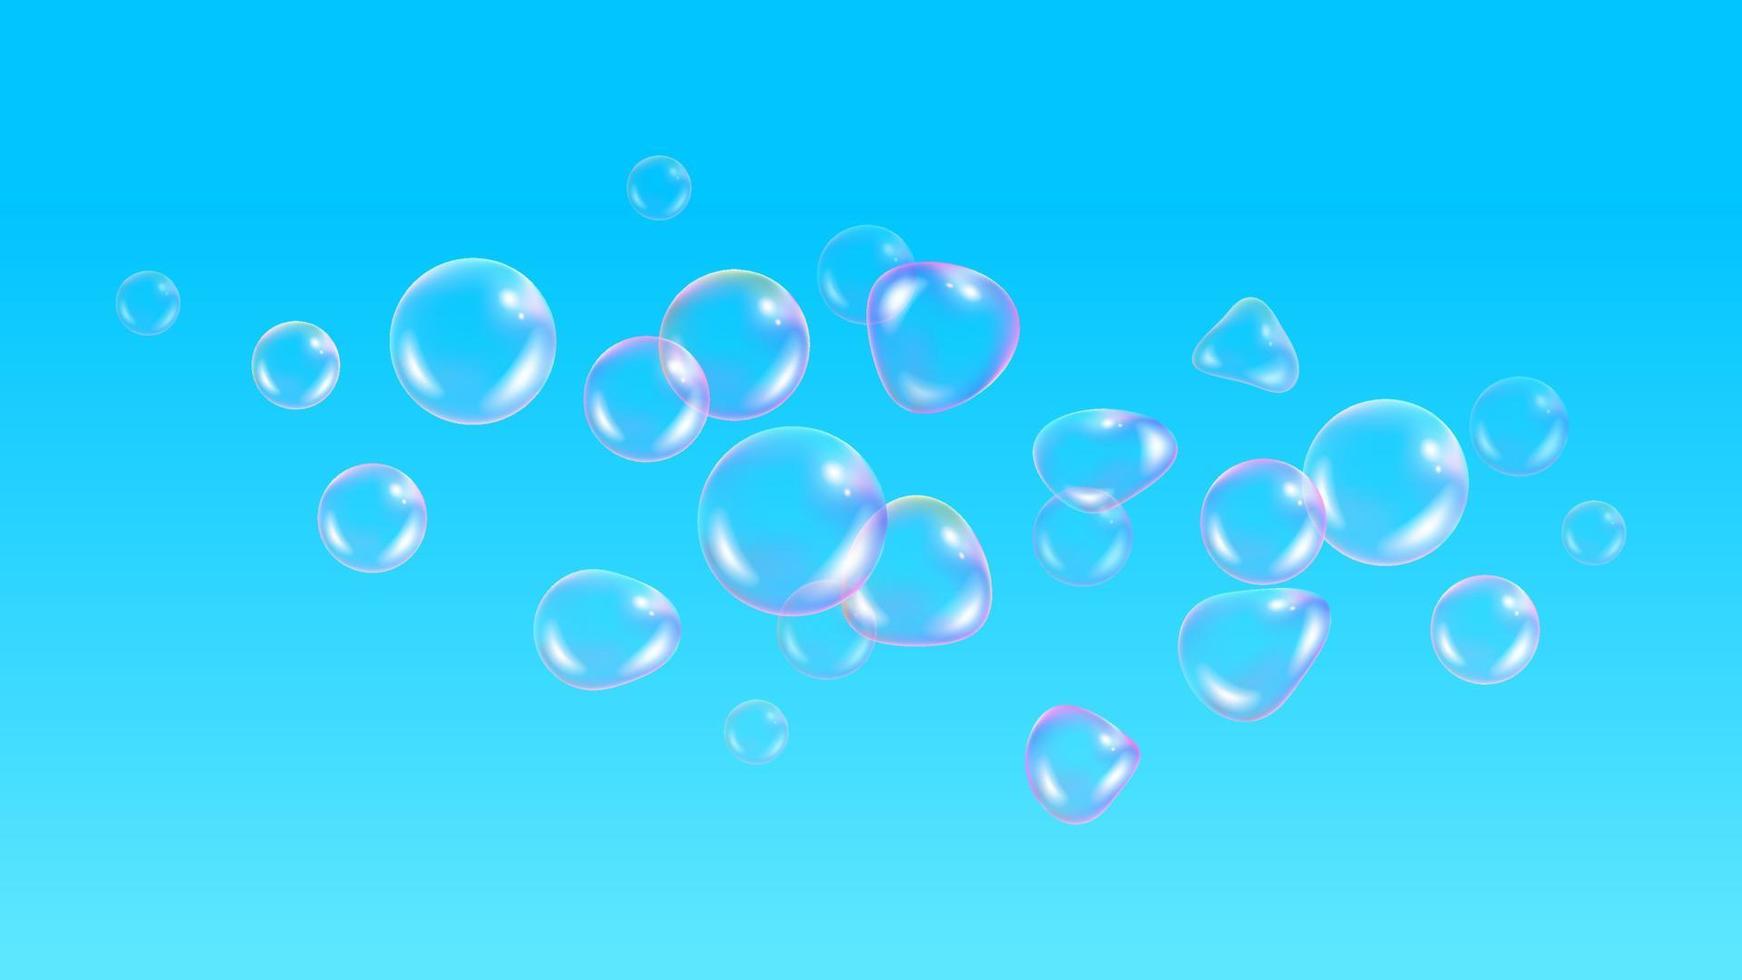 Kinderkulisse, mit Ballontapete. realistische seifenblasen mit regenbogenreflexion auf hintergrund des blauen himmels. Vektor Wasserschaumblasen. bunte Regenbogenglaskugel.